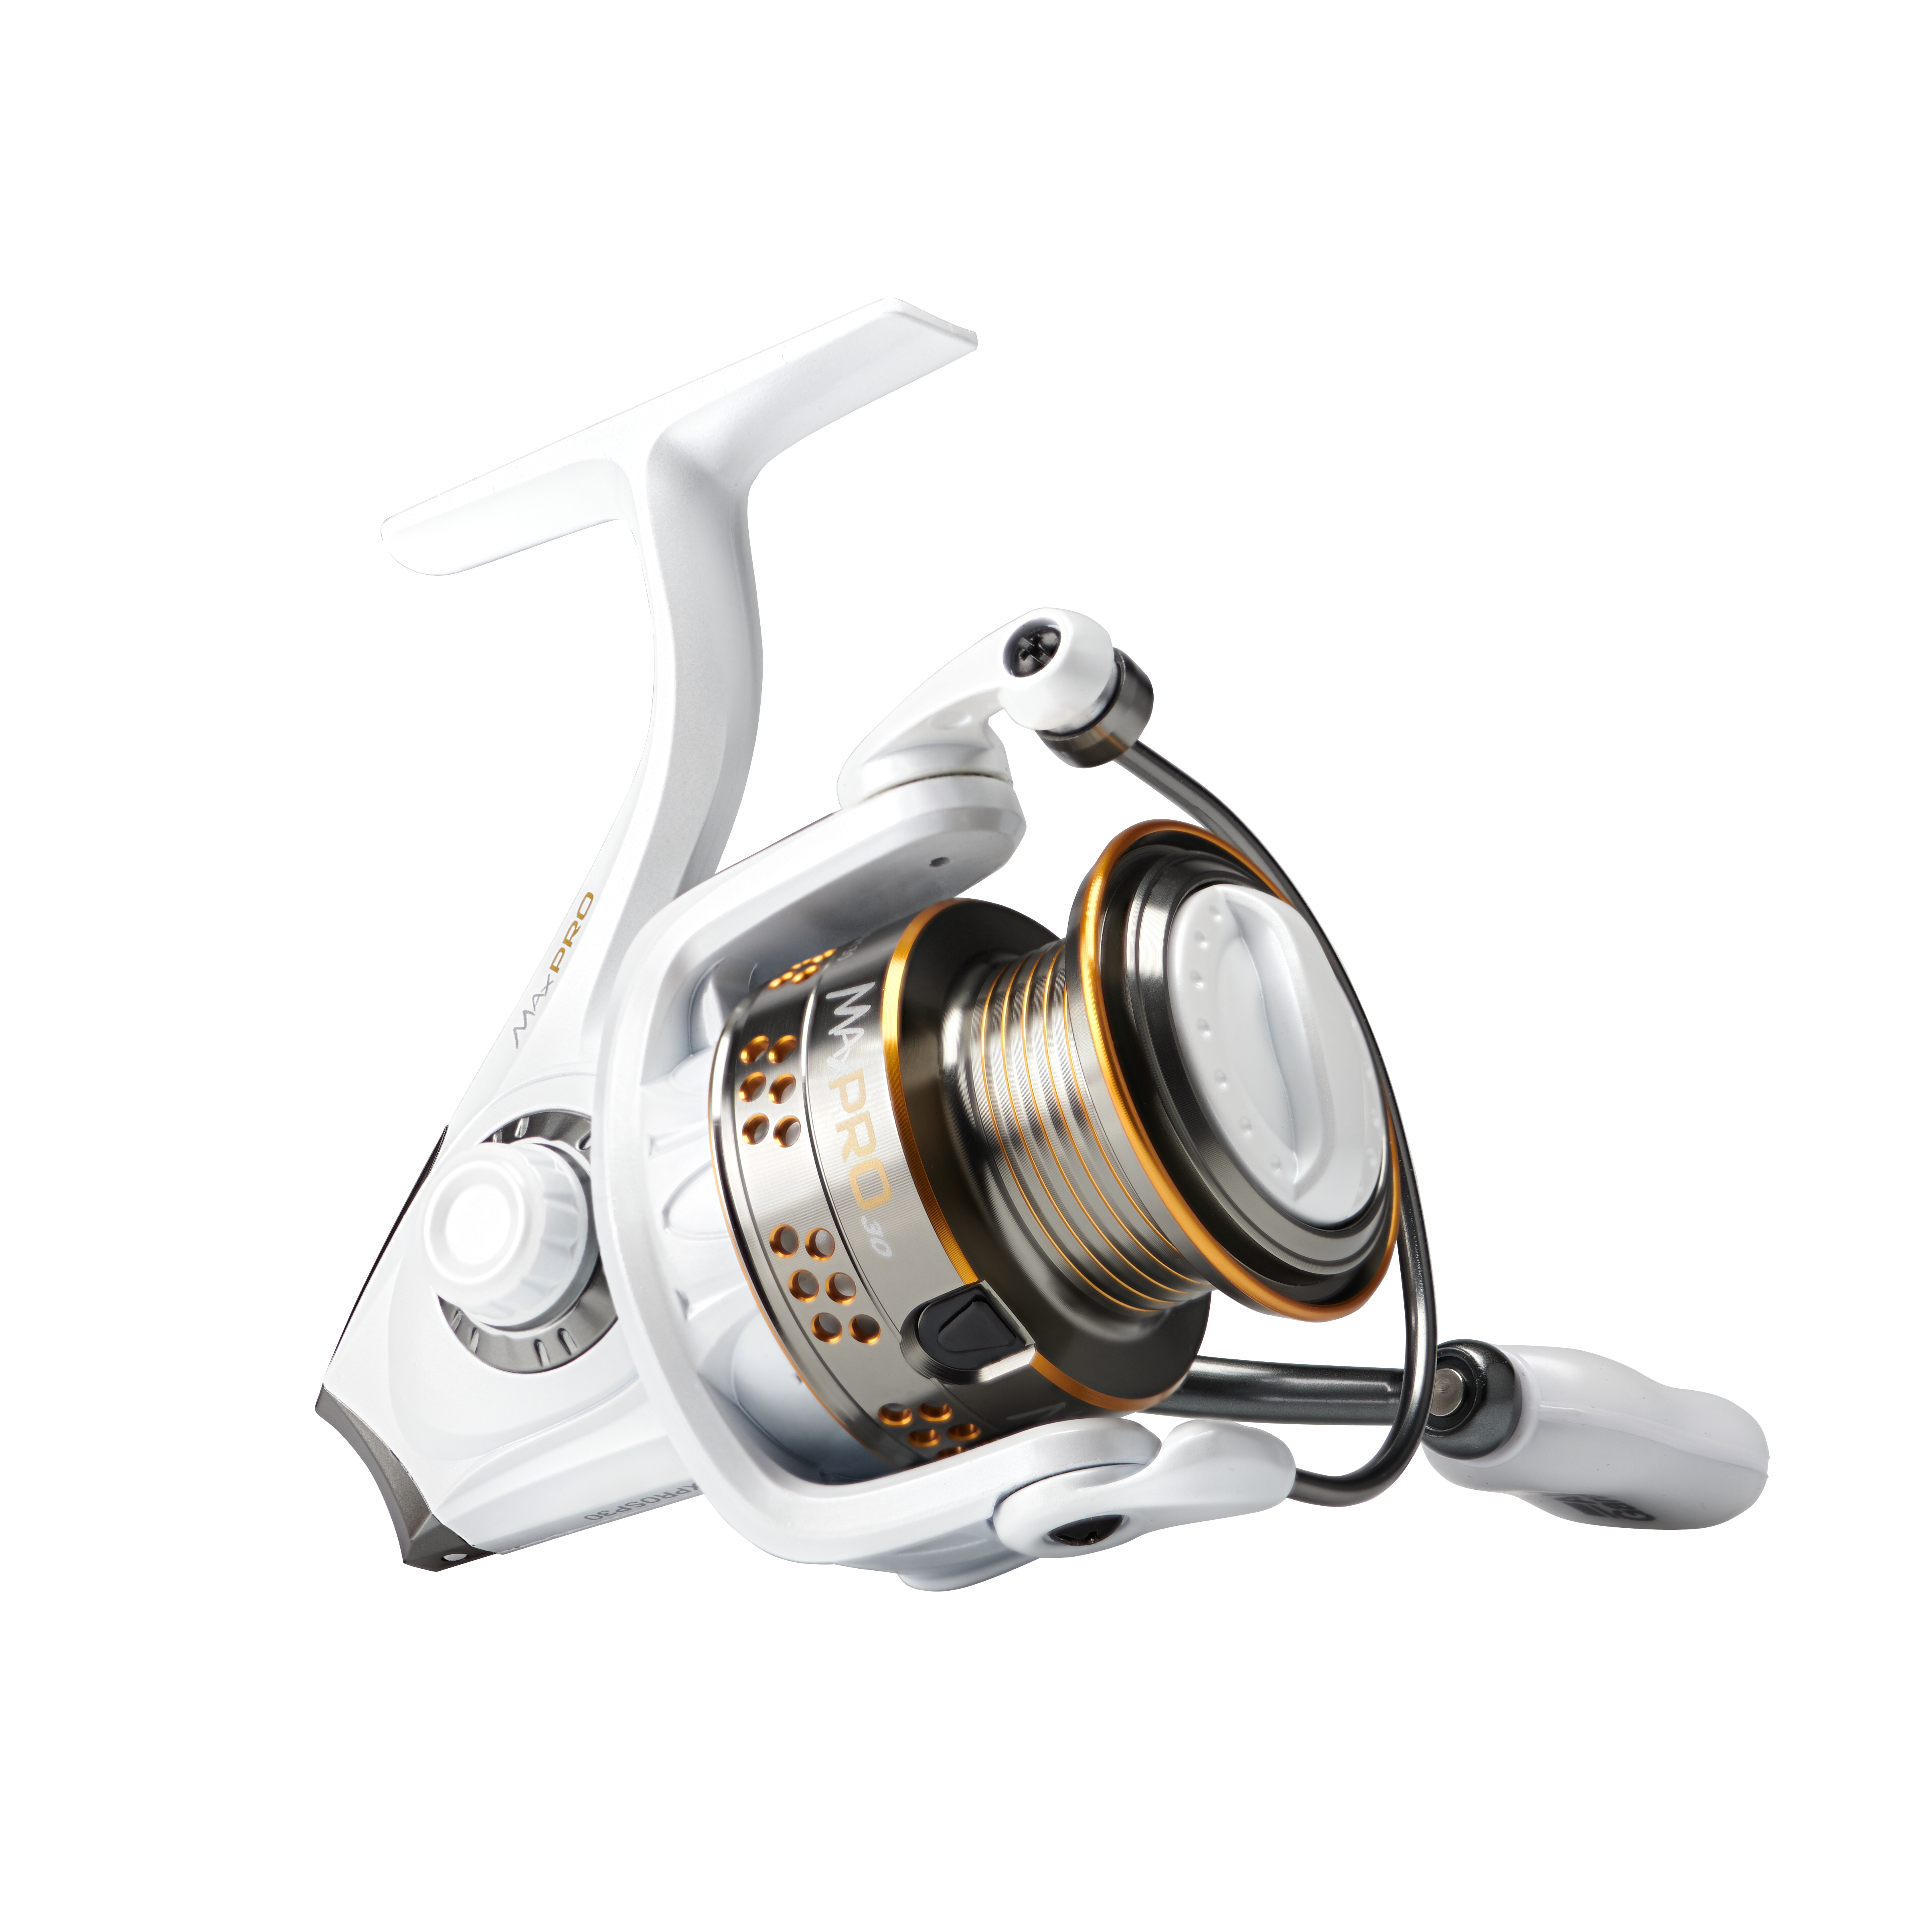 الغاء فيزا تسوق الراجحي Max Pro Spinning Reel – Abu Garcia® Fishing الغاء فيزا تسوق الراجحي